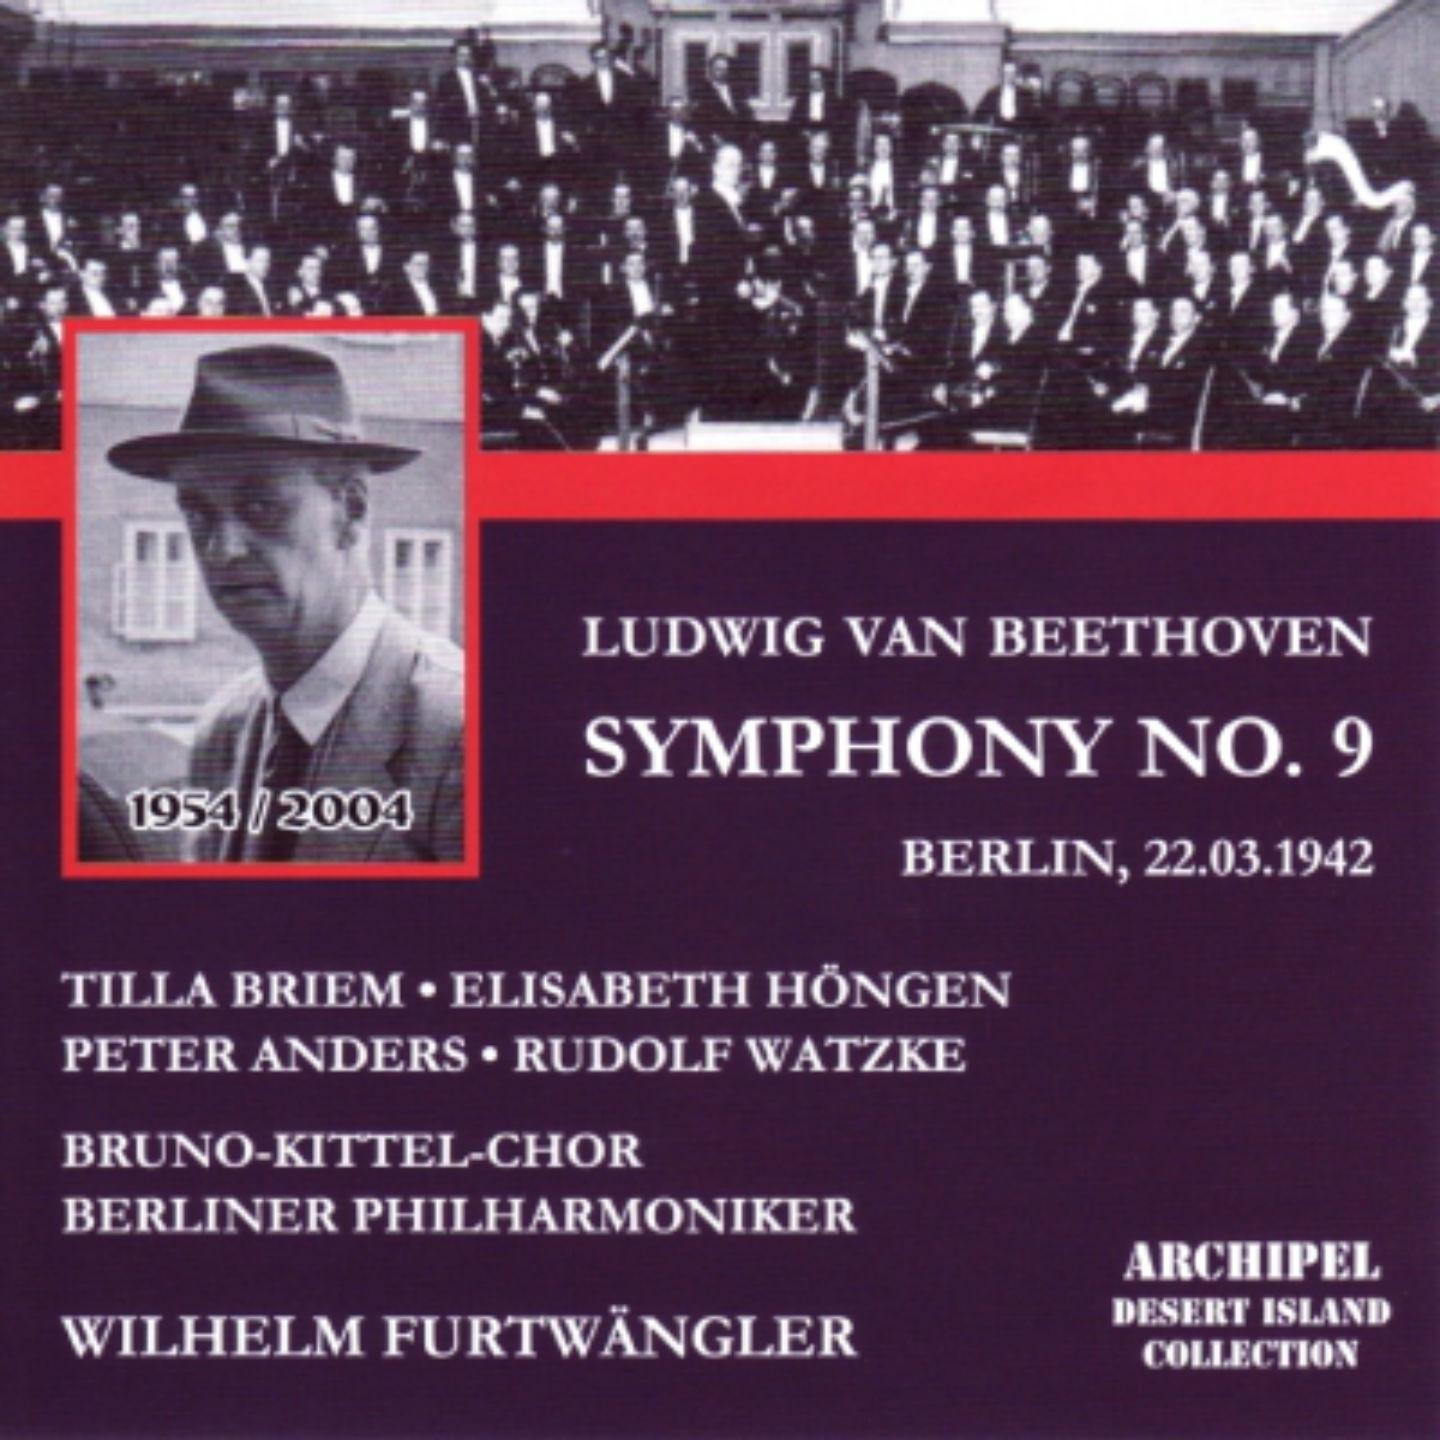 Symphony No. 9 in D Minor, Op. 125 "Choral": I. Allegro ma non troppo - Un poco maestoso